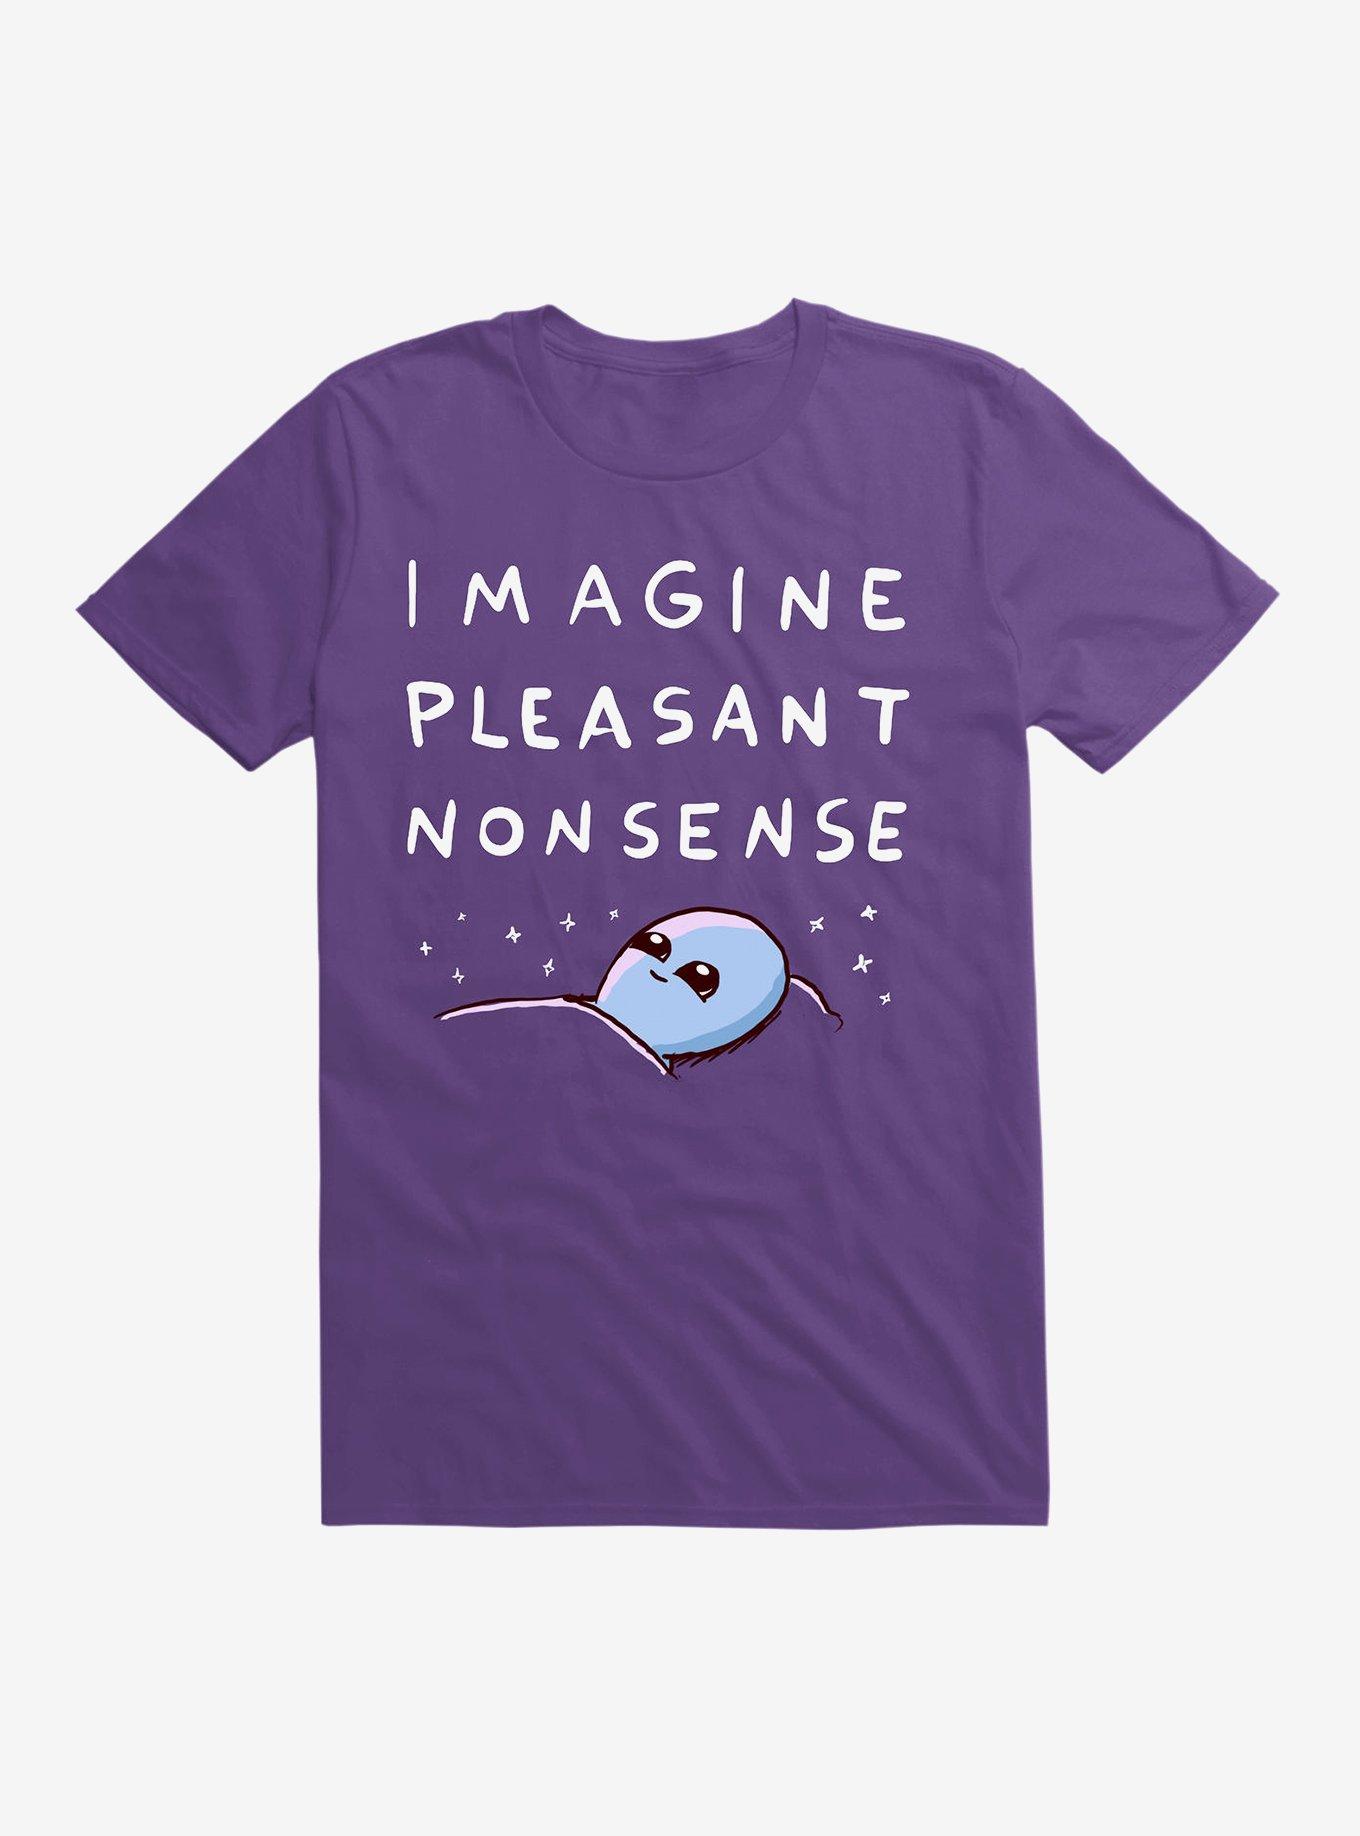 STRANGE PLANET SPECIAL PRODUCT: IMAGINE PLEASANT NONSENSE Men's T-Shirt, Nathan W Pyle Shop